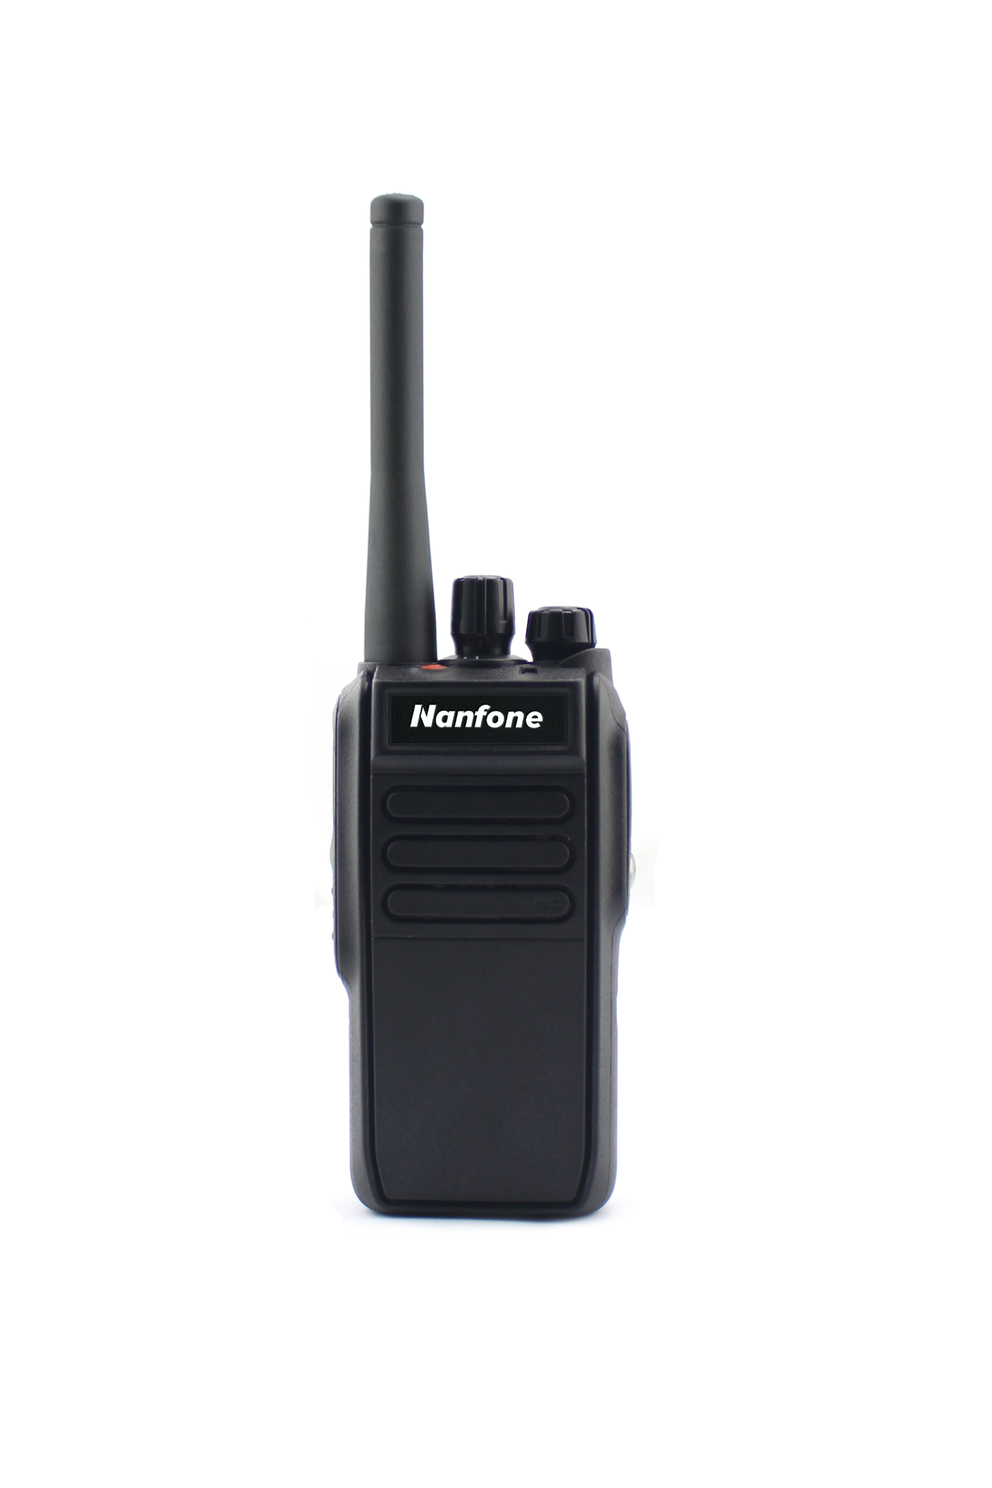 IP67 Waterproof dustproof walkie talkie